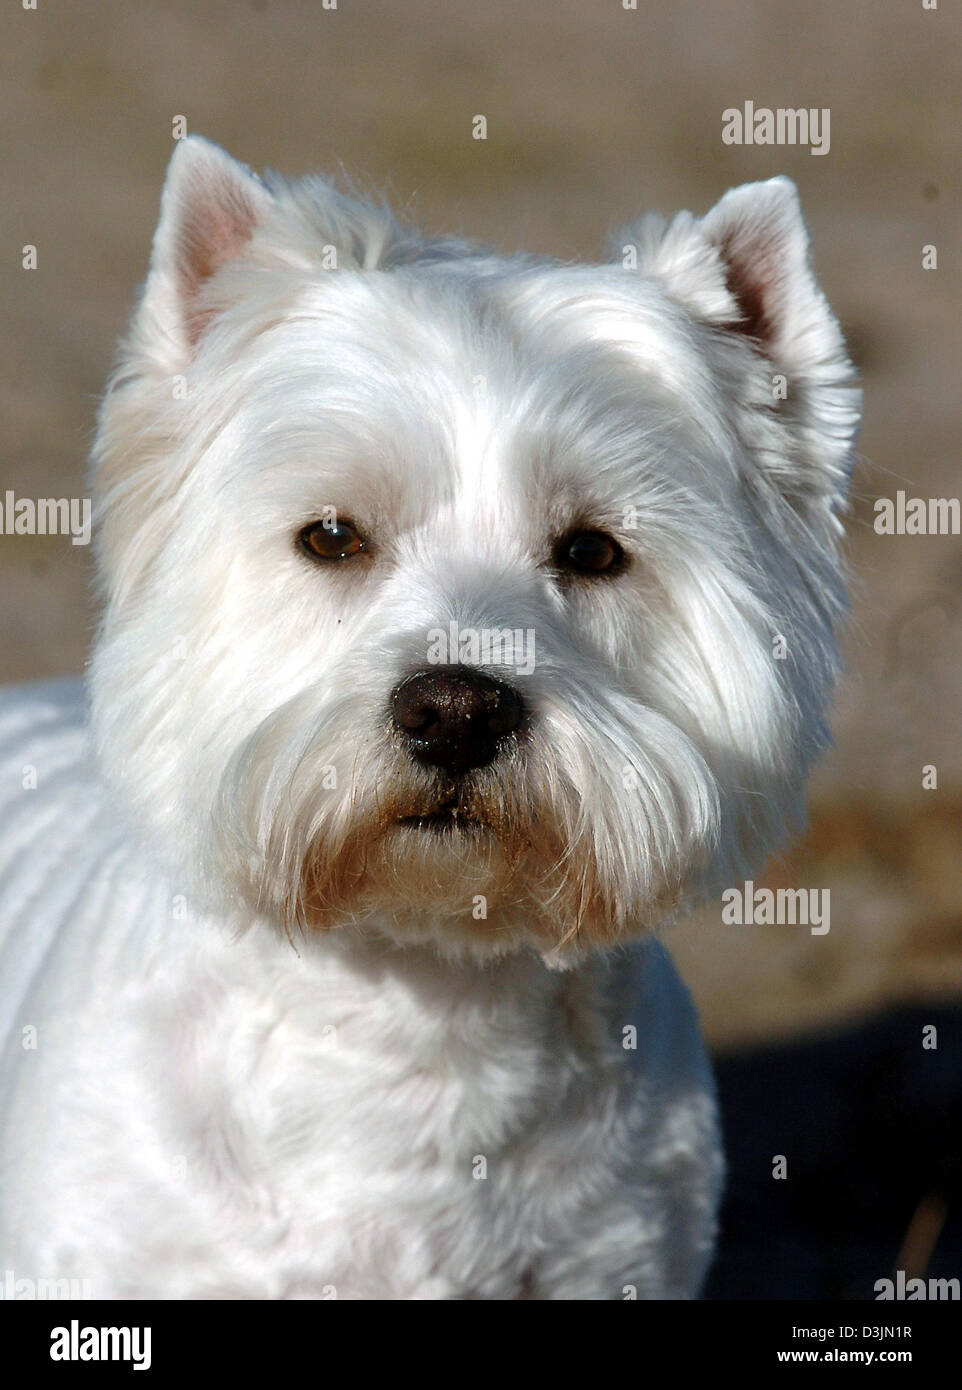 Dpa) - ein West Highland White Terrier in Hamburg, Deutschland, 1. Februar  2005 abgebildet. Der West Highland White Terrier ("Westie") ist ein Terrier- Hunderasse, die ursprünglich aus Schottland und wurde ursprünglich für die